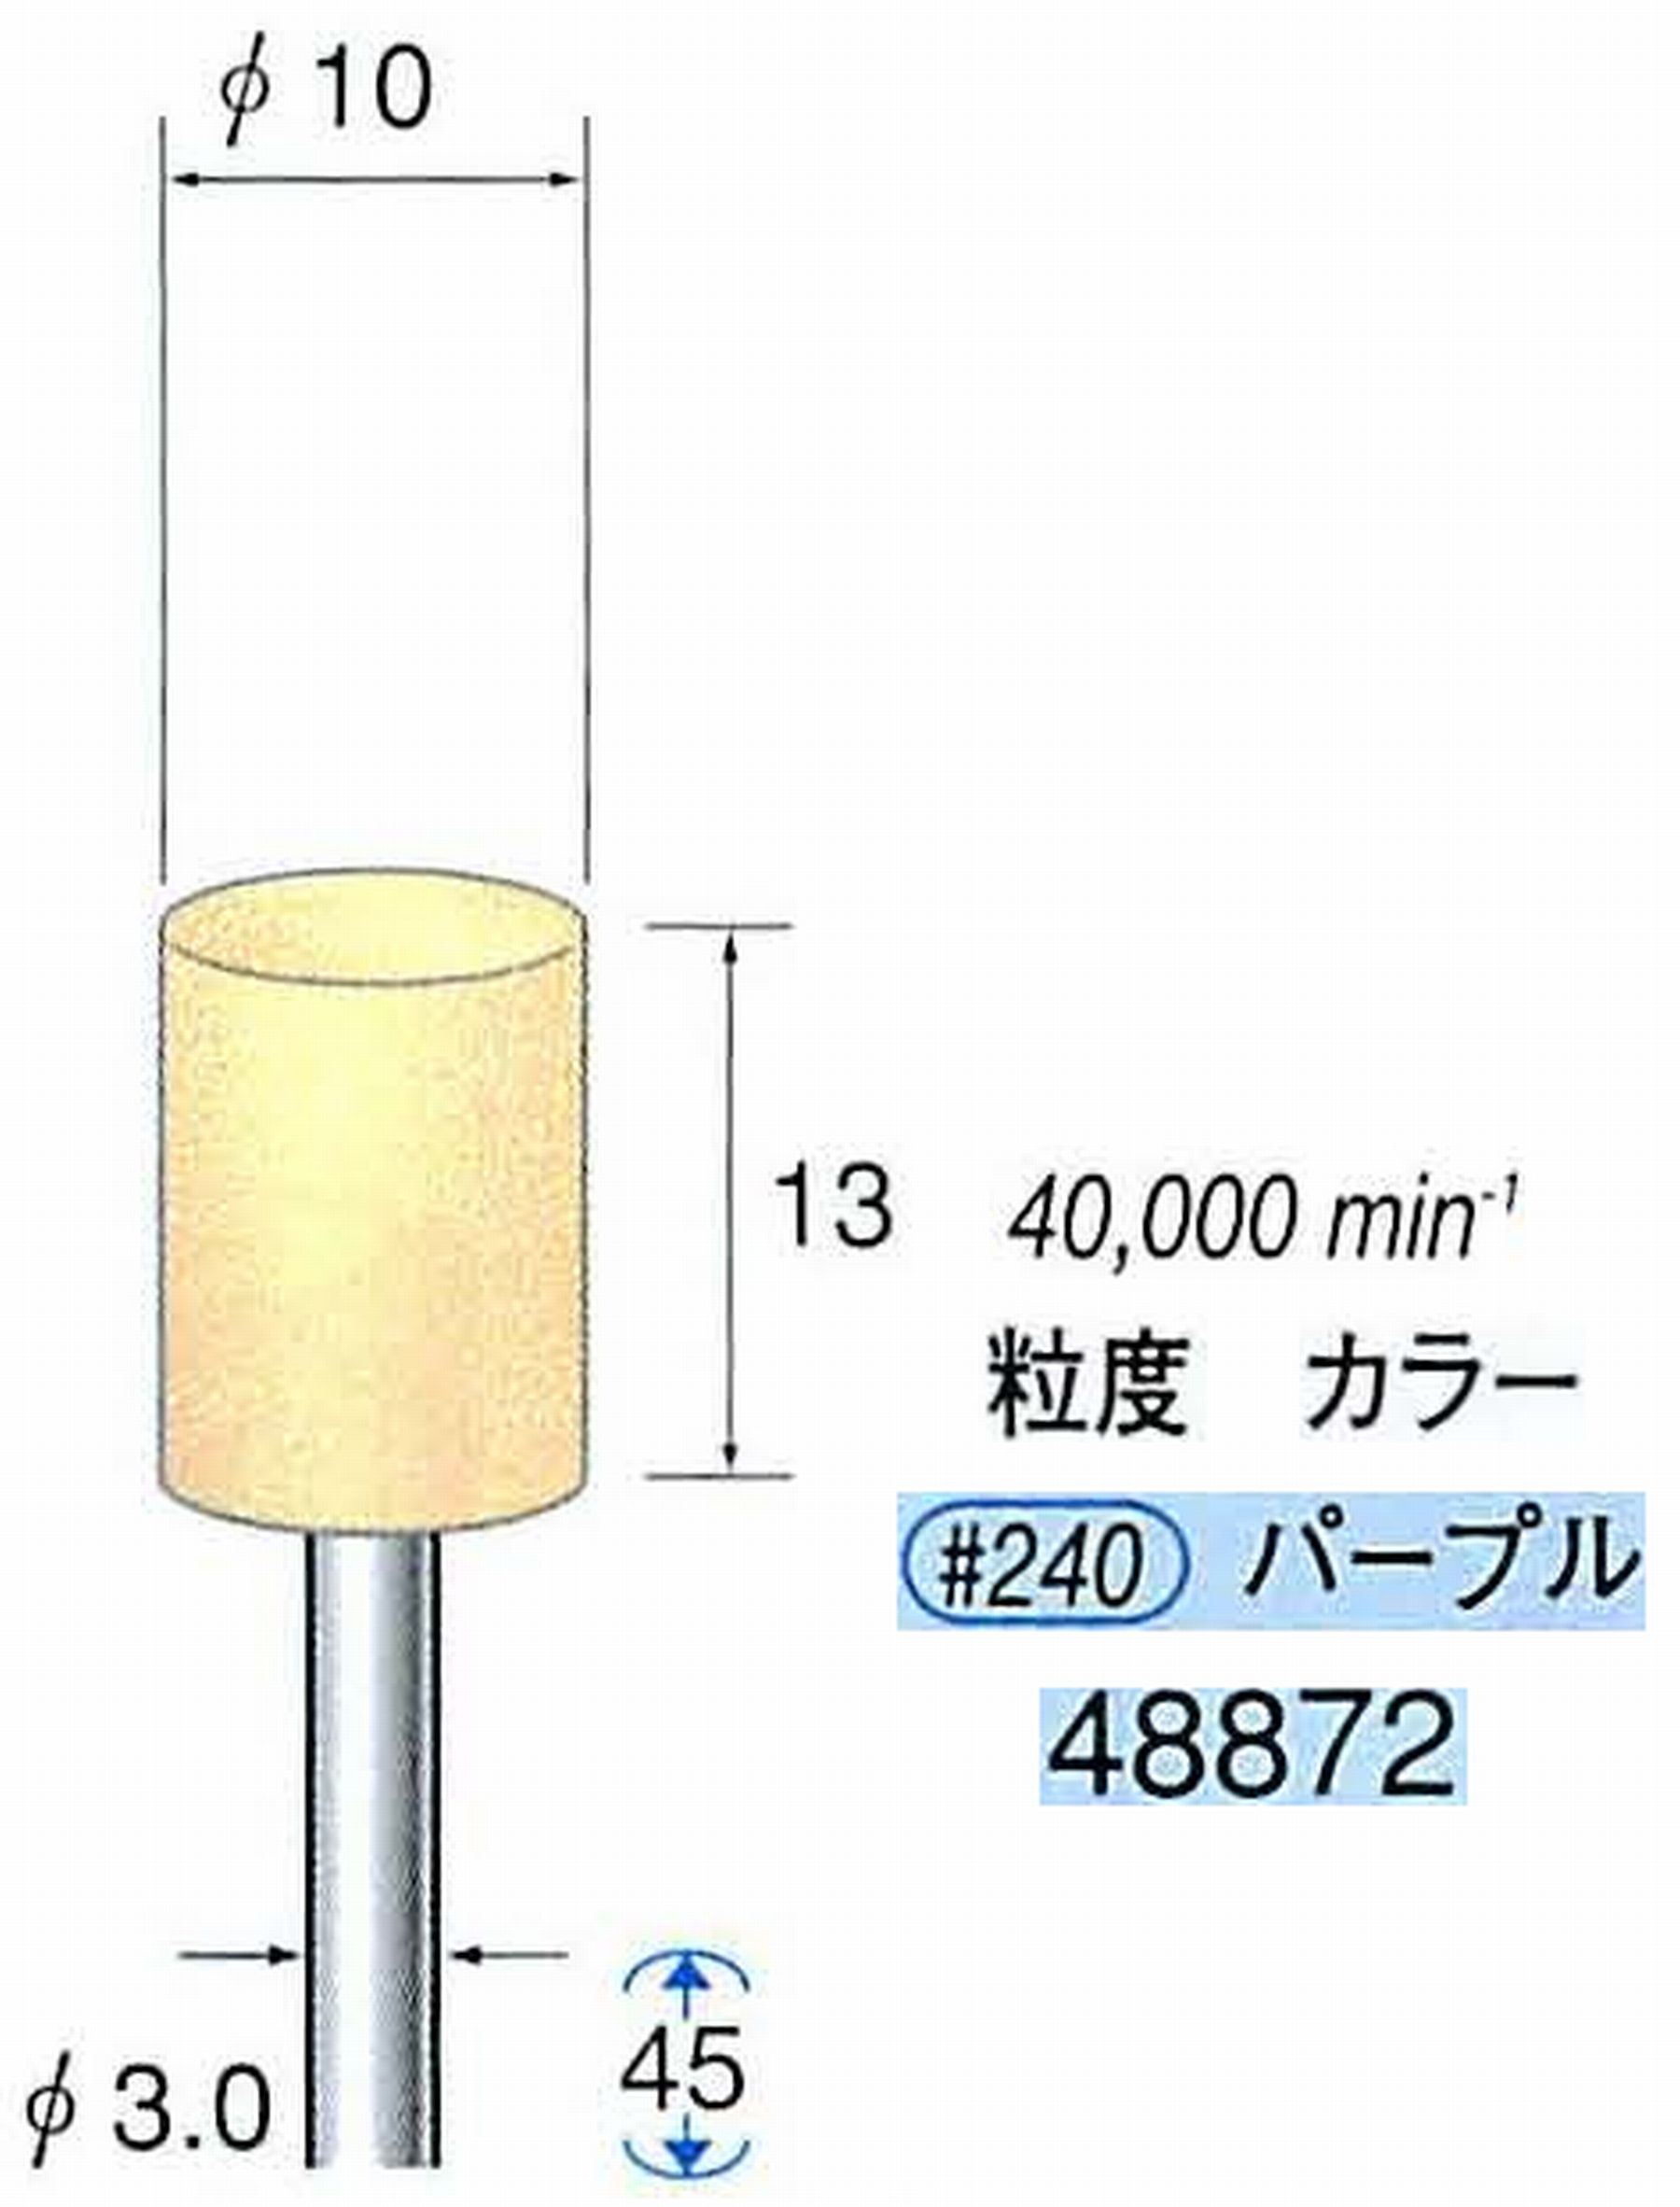 ナカニシ/NAKANISHI ポリッシュサンダー 軸径(シャンク)φ3.0mm 48872